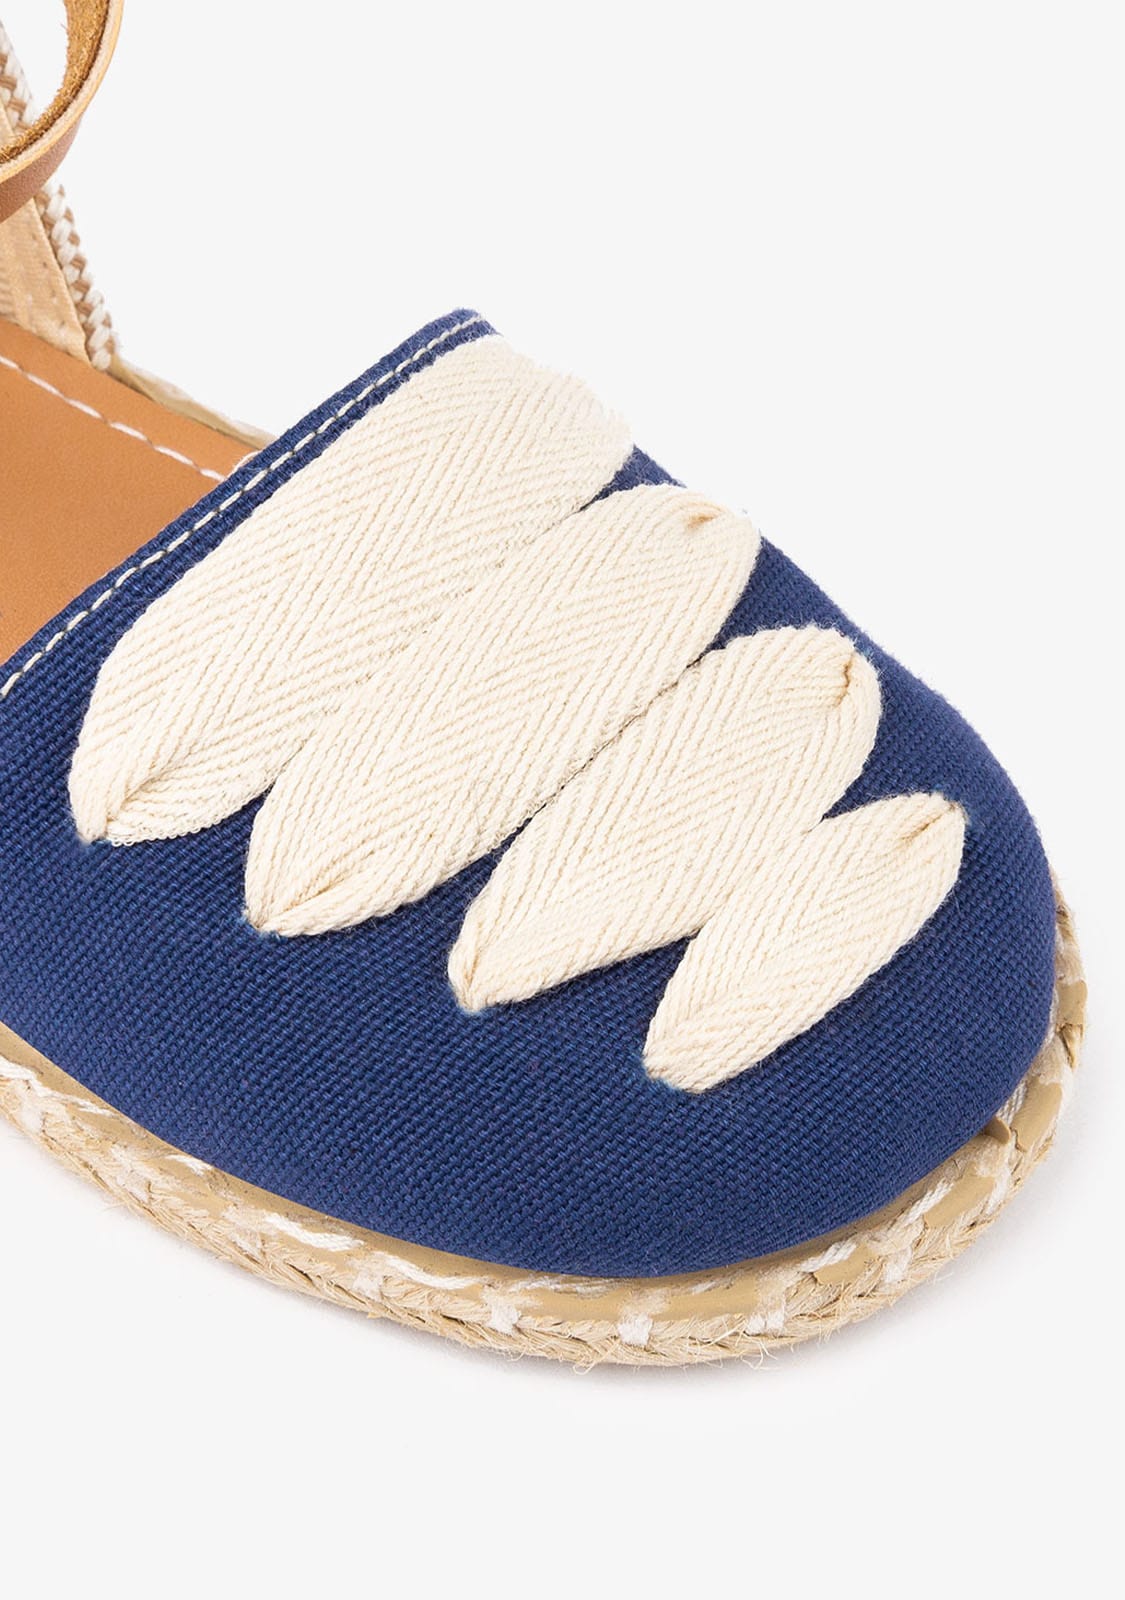 CONGUITOS Shoes Girl's Blue Laces Espadrilles